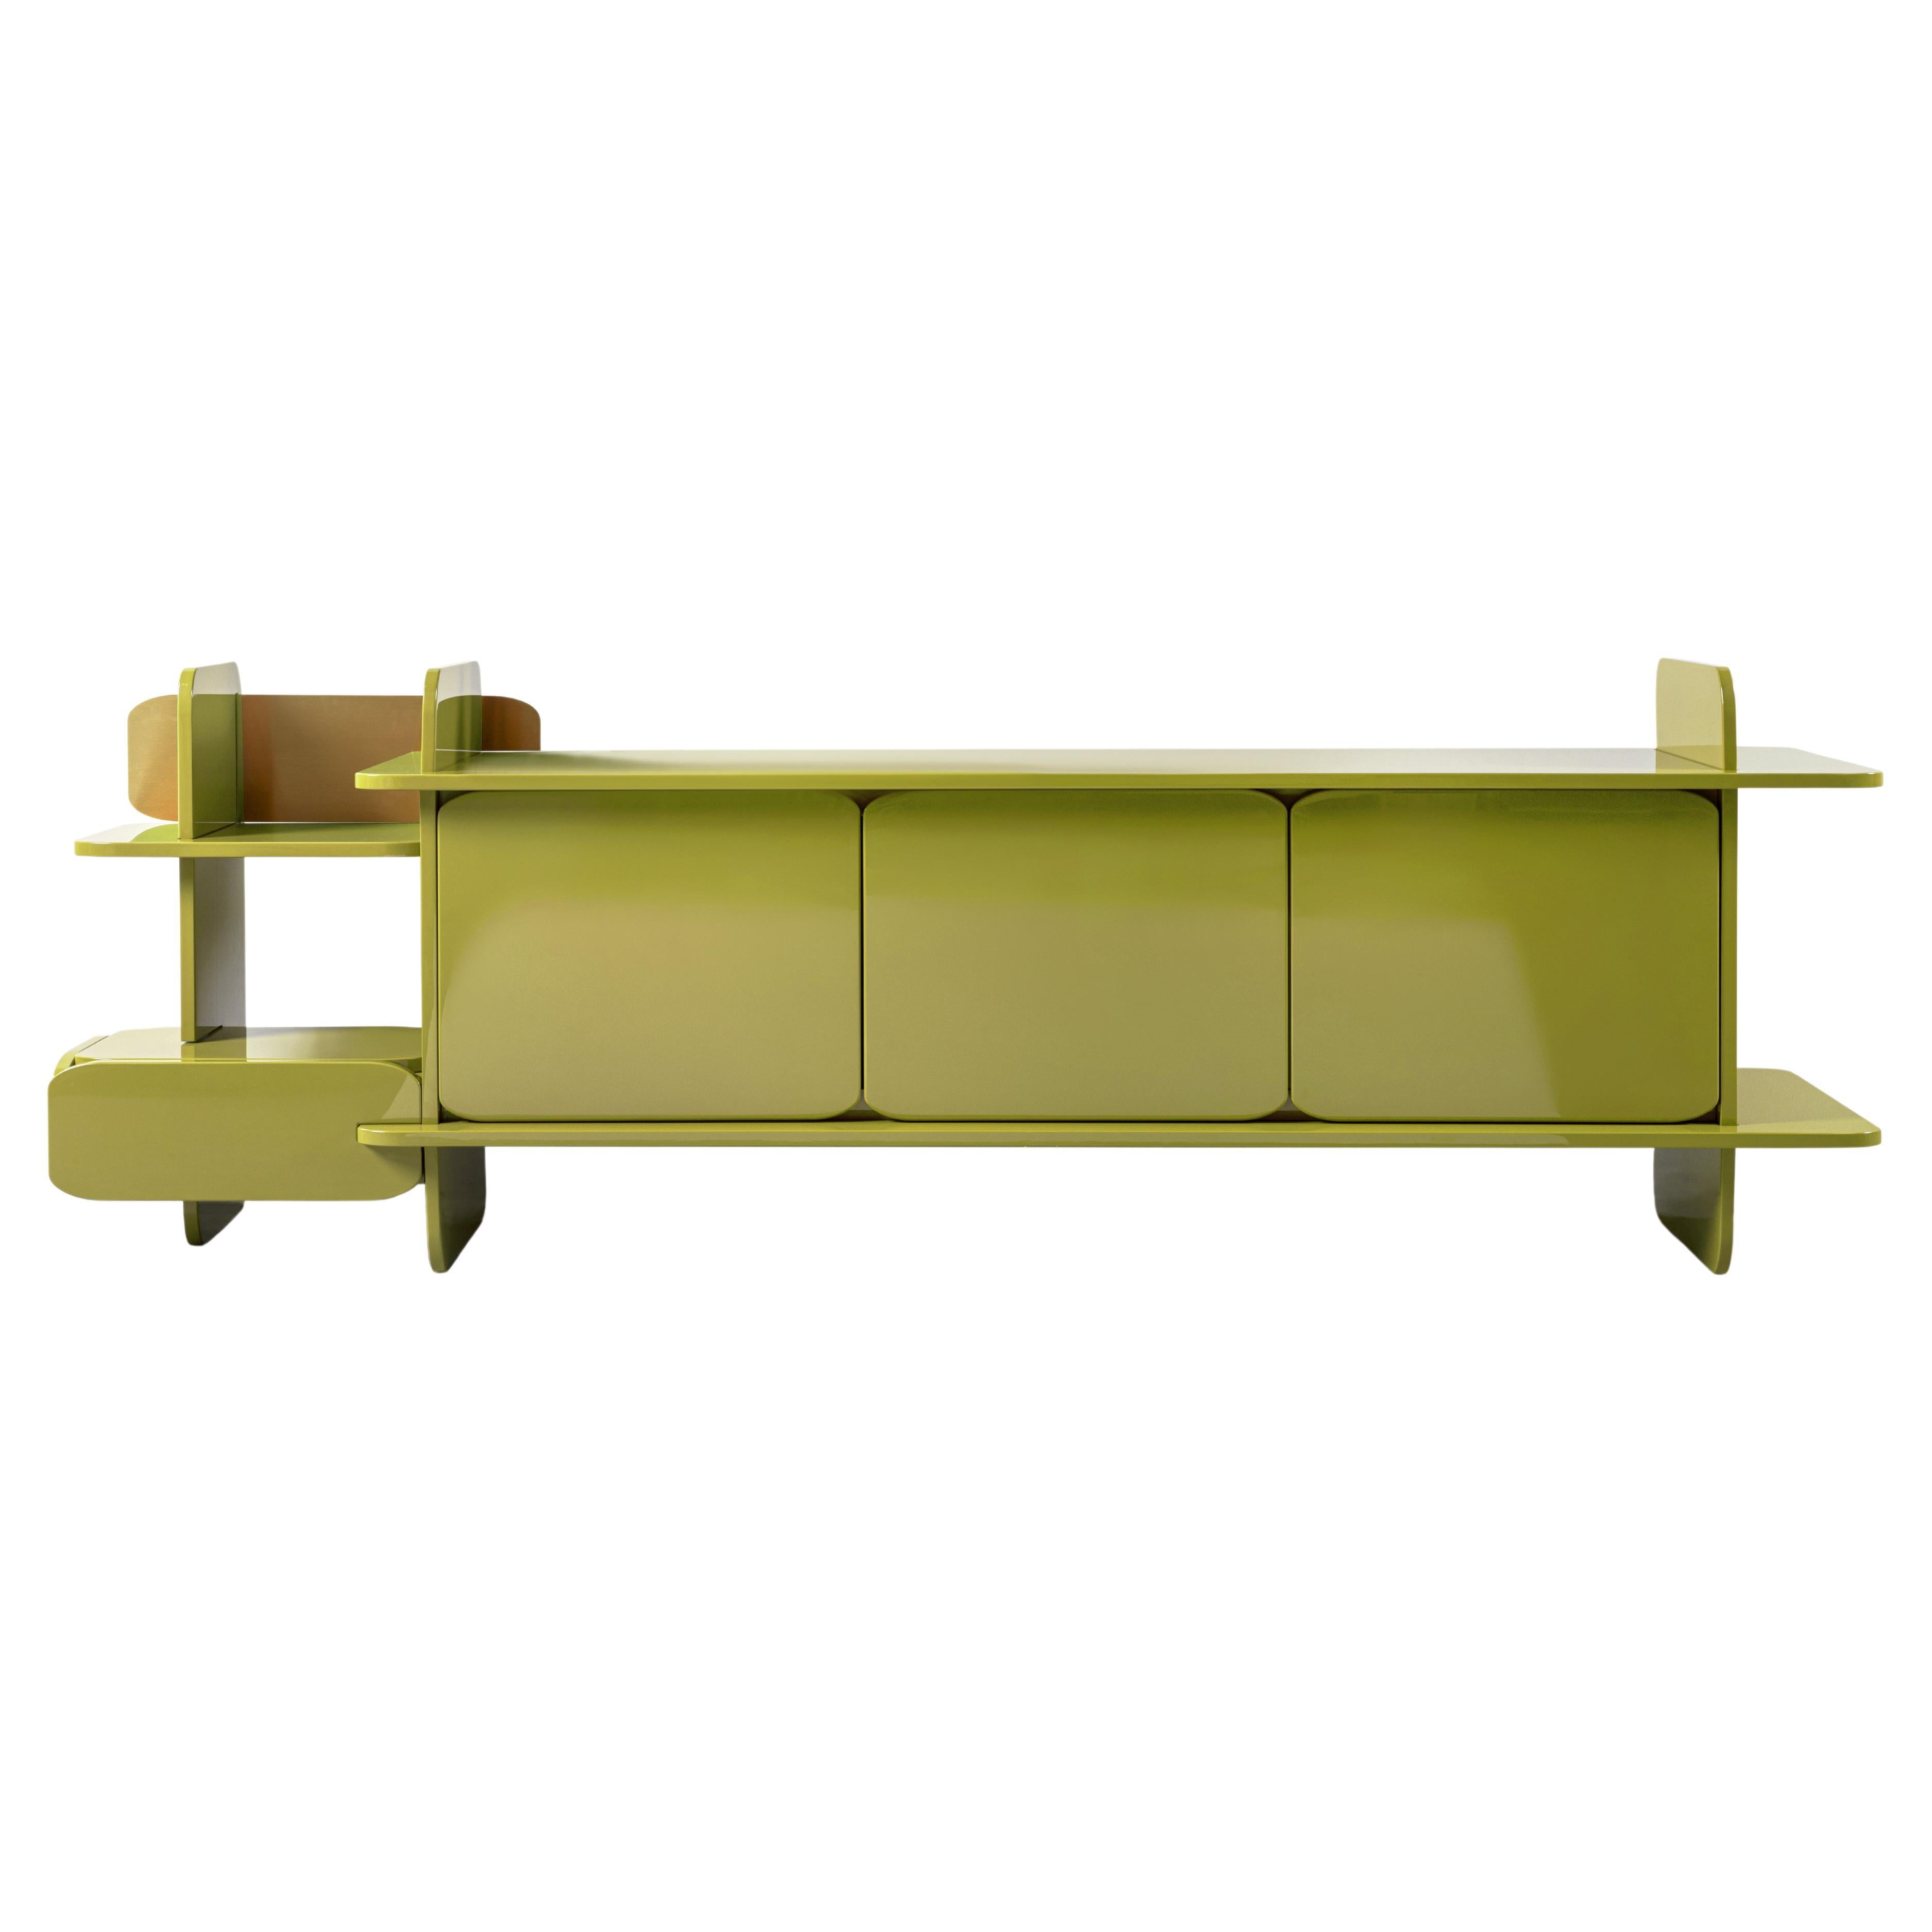 Contemporary Storage Unit von HESSENTIA aus grün lackiertem Wood mit Metalldetails